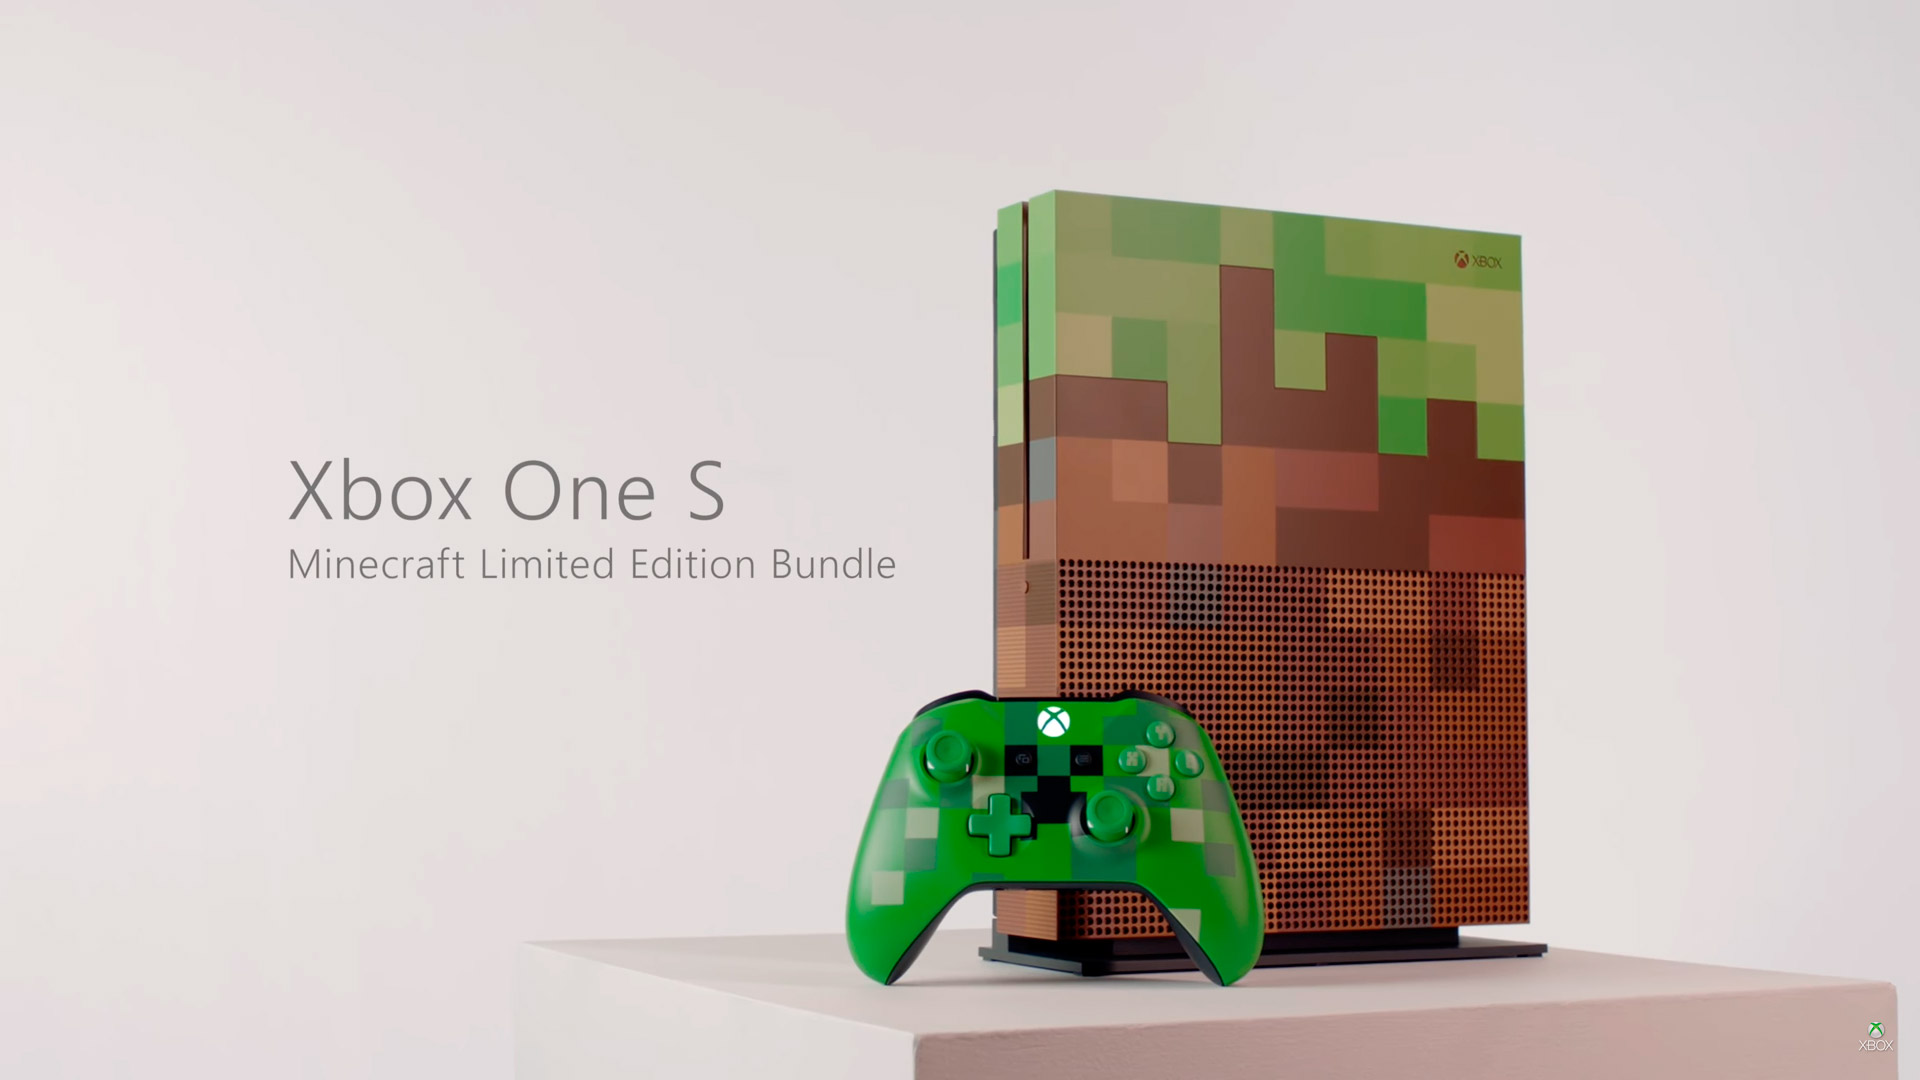 [Gamescom 2017] Nueva Xbox One S Minecraft Limited Edition para el 3 de octubre